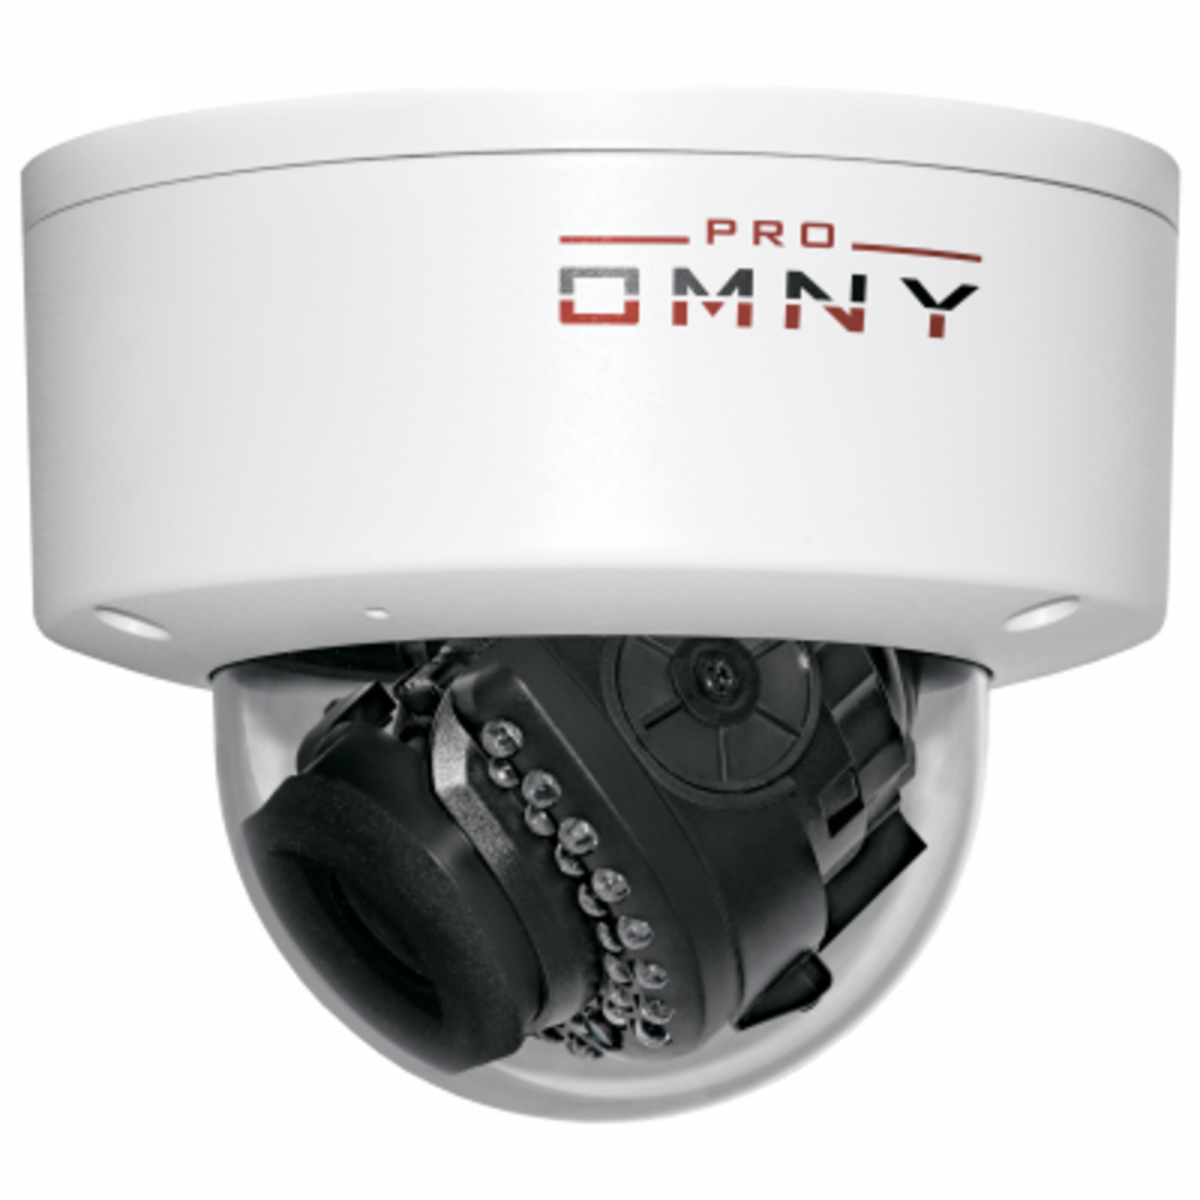 Проектная купольная IP камера OMNY 3000 PRO 3Мп/25кс, H.265, управл. IR, моториз.объектив 2.8-12мм, 12В/PoE, встроенный микрофон